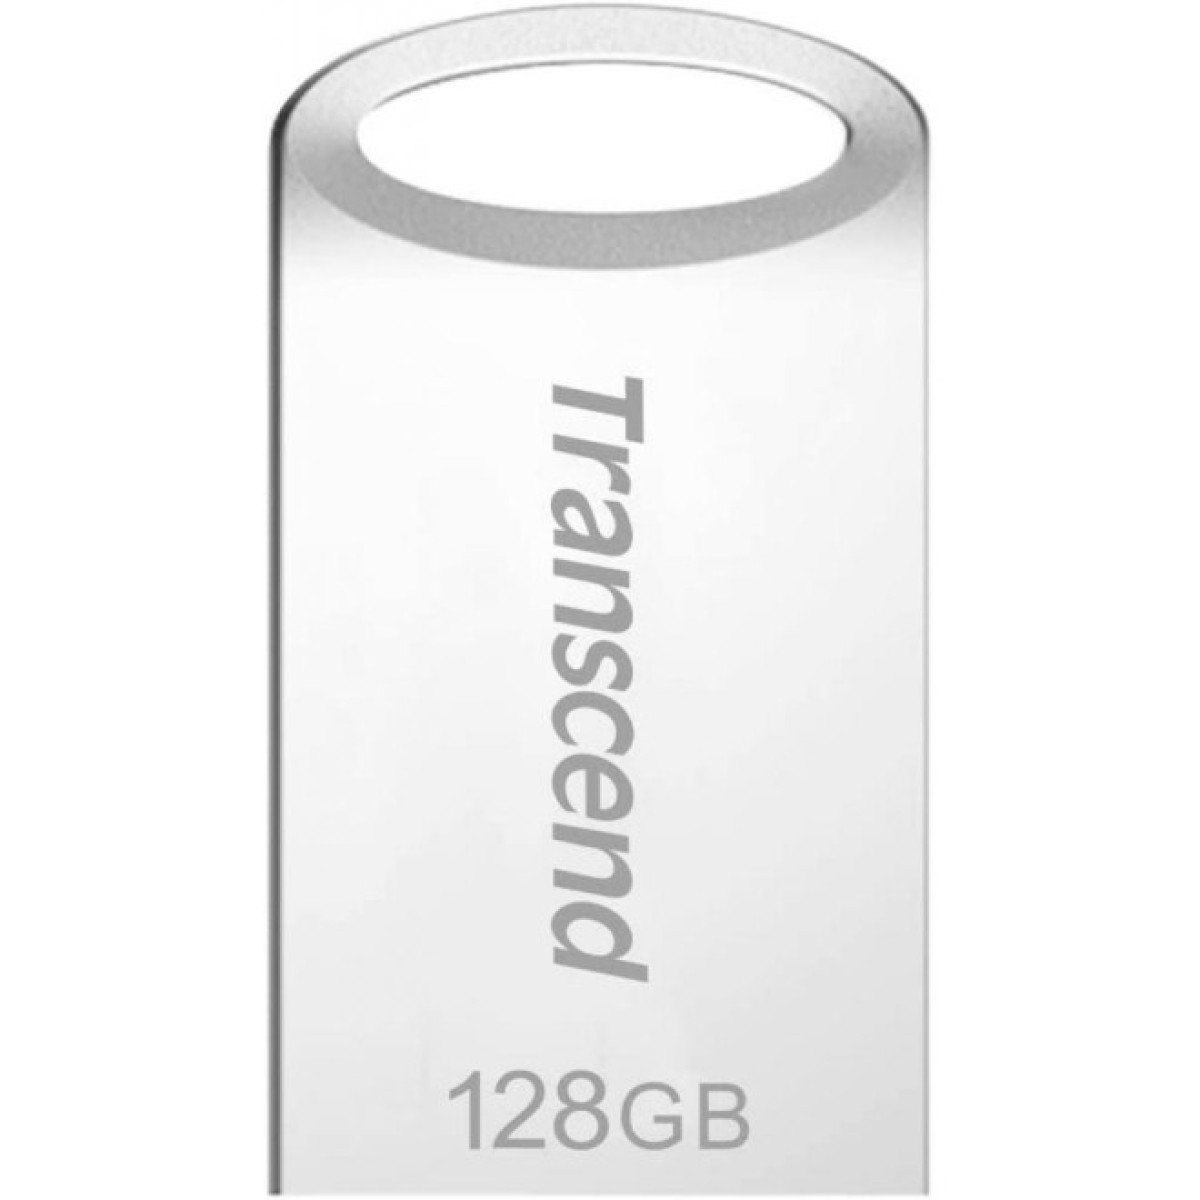 USB флеш накопичувач Transcend 128GB JetFlash 710 Silver USB 3.0 (TS128GJF710S) 256_256.jpg